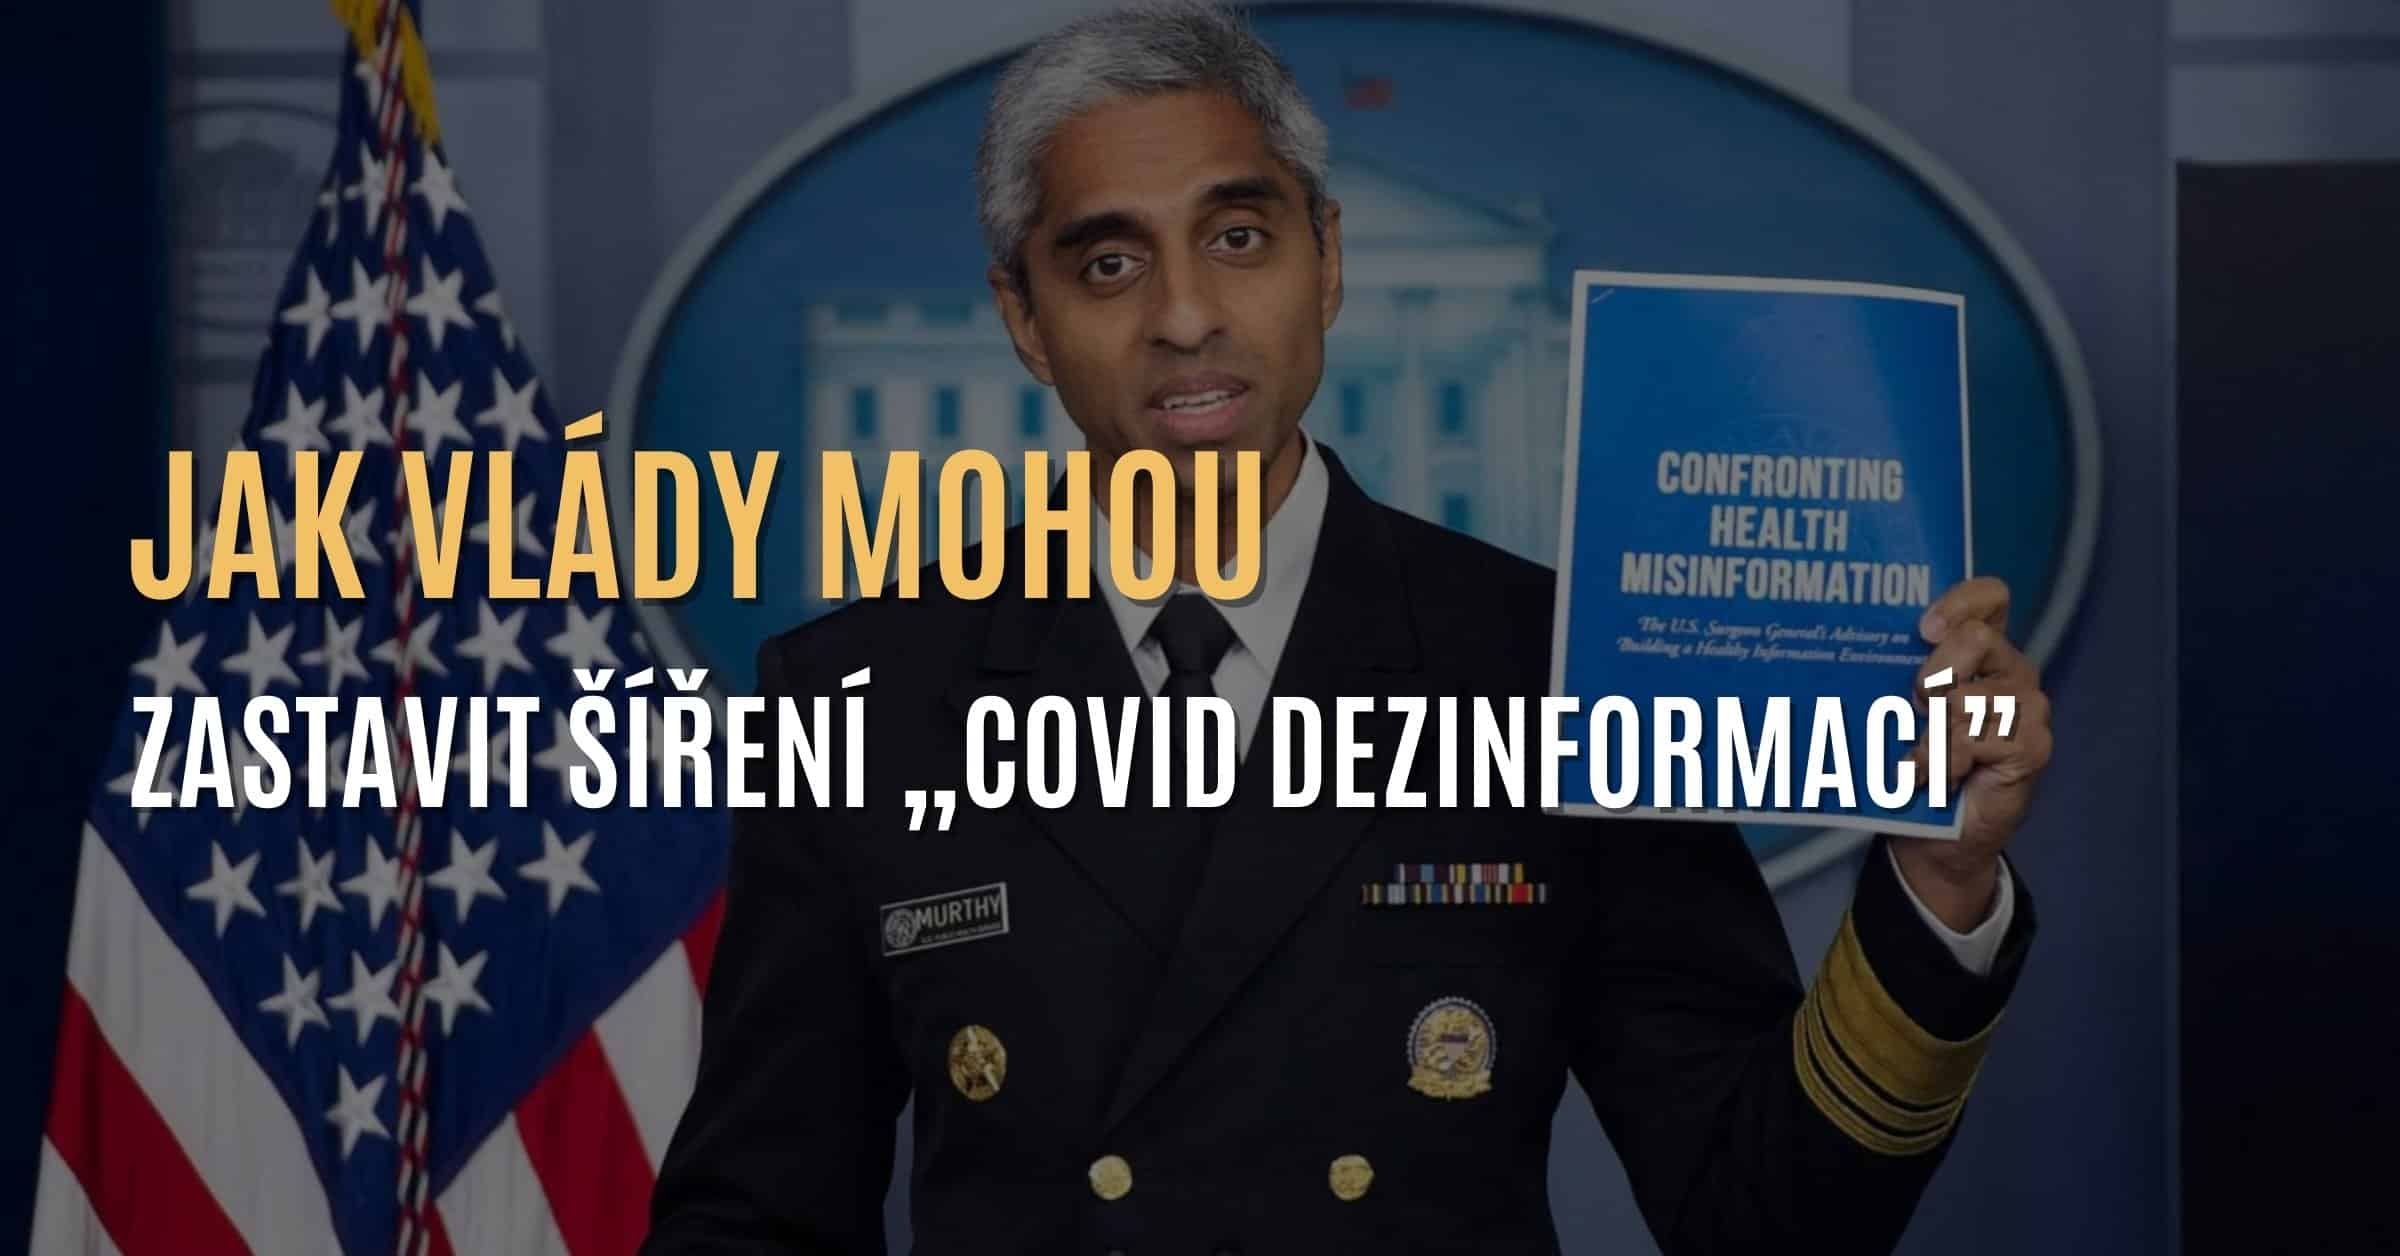 Jak může vláda okamžitě zastavit šíření „COVID dezinformací”